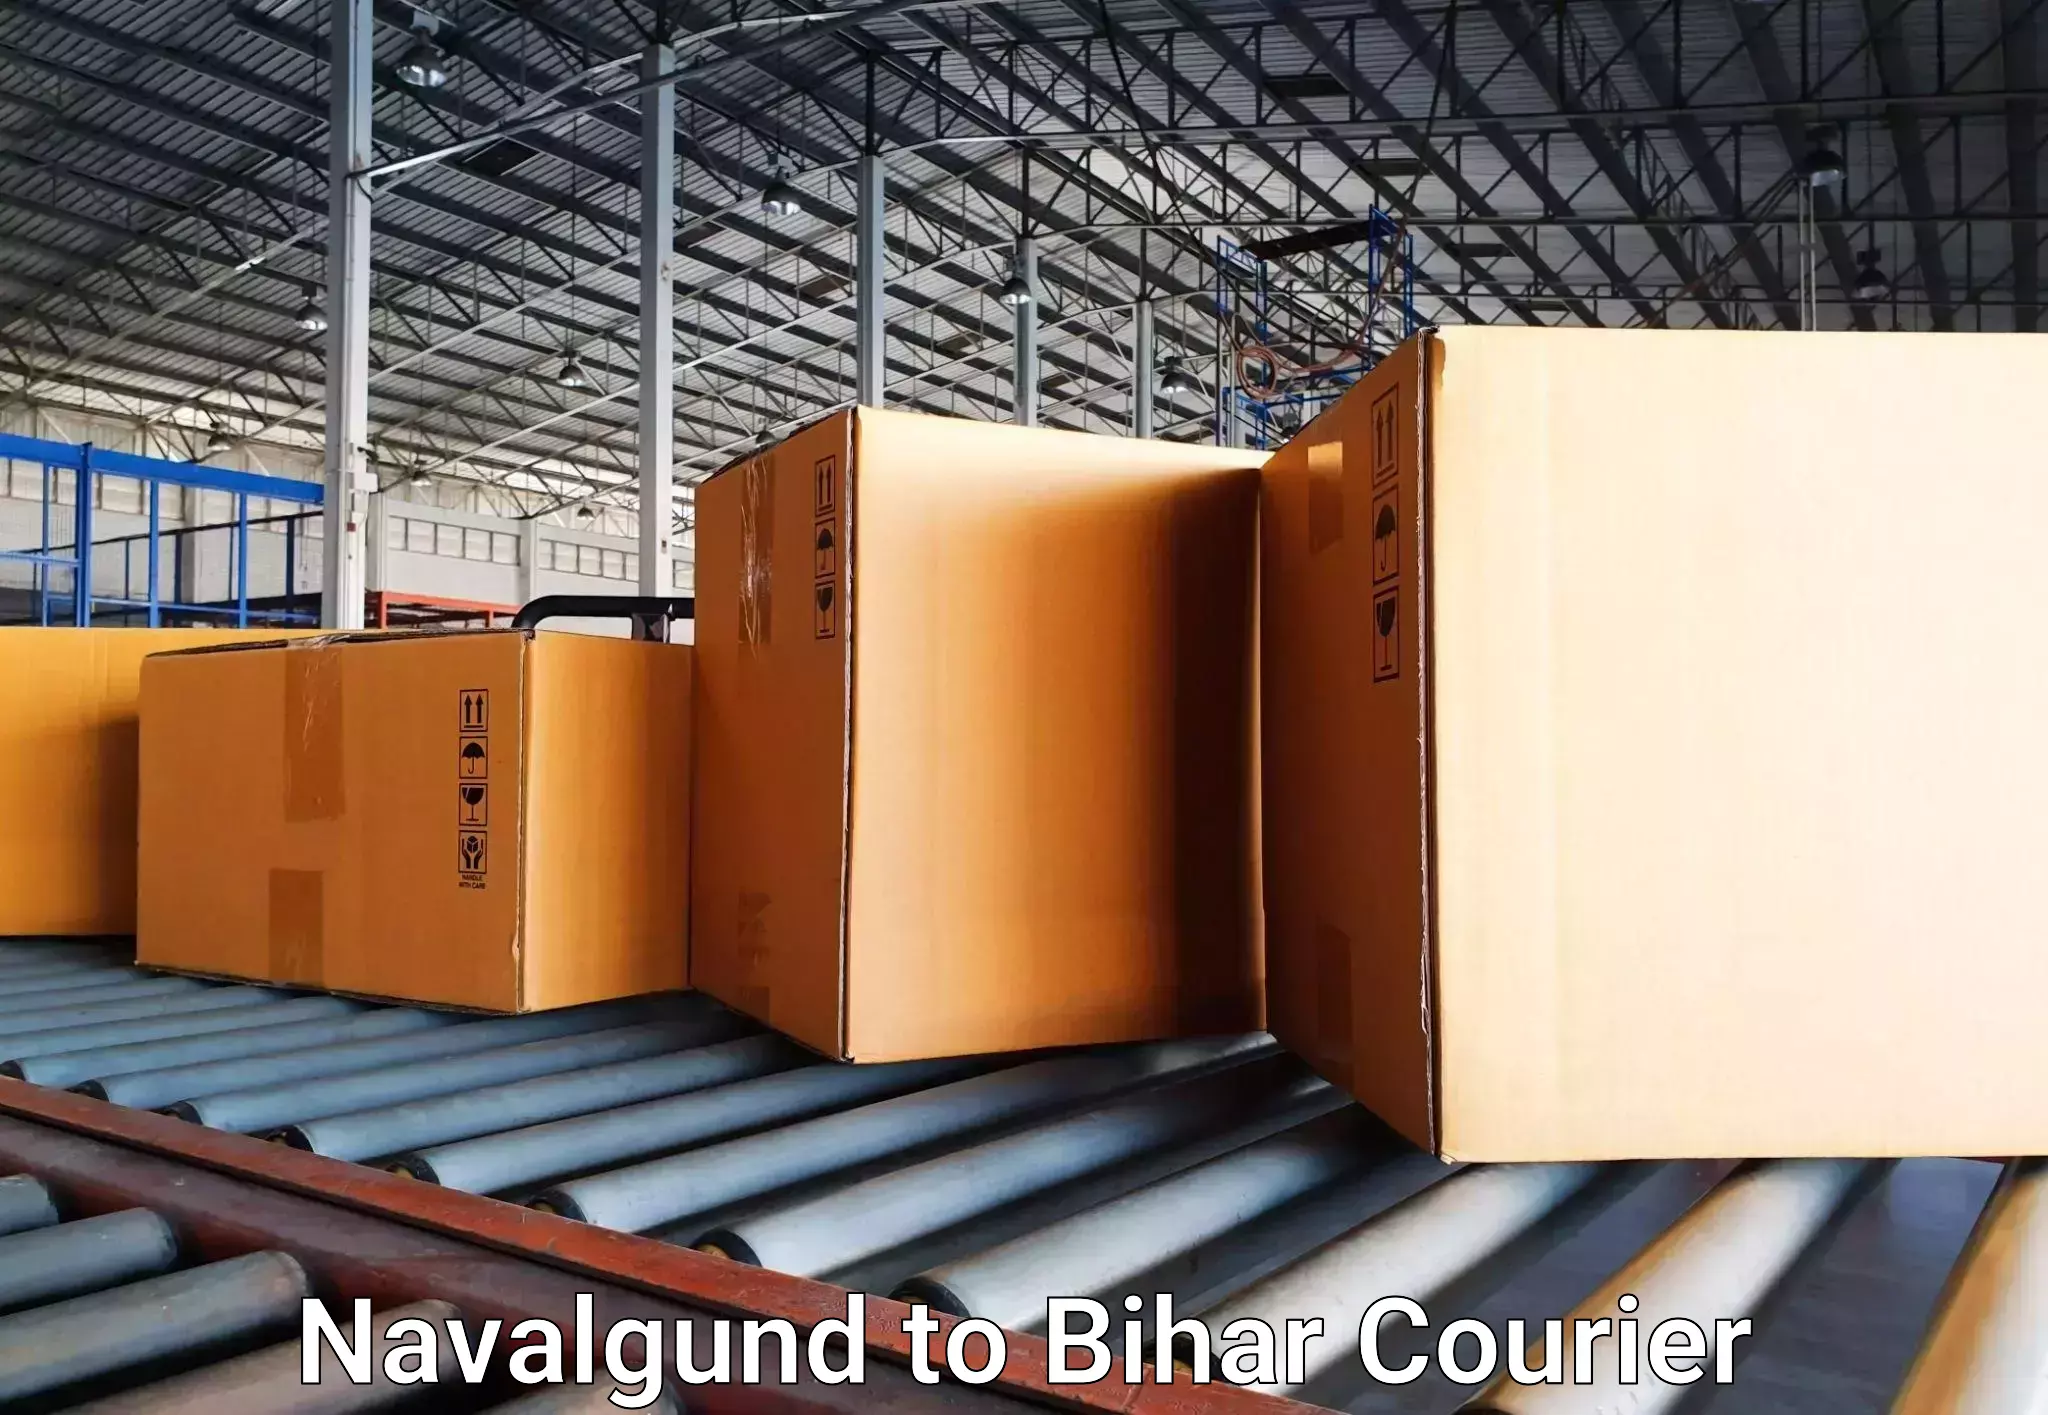 Luggage transport consultancy Navalgund to Bihar